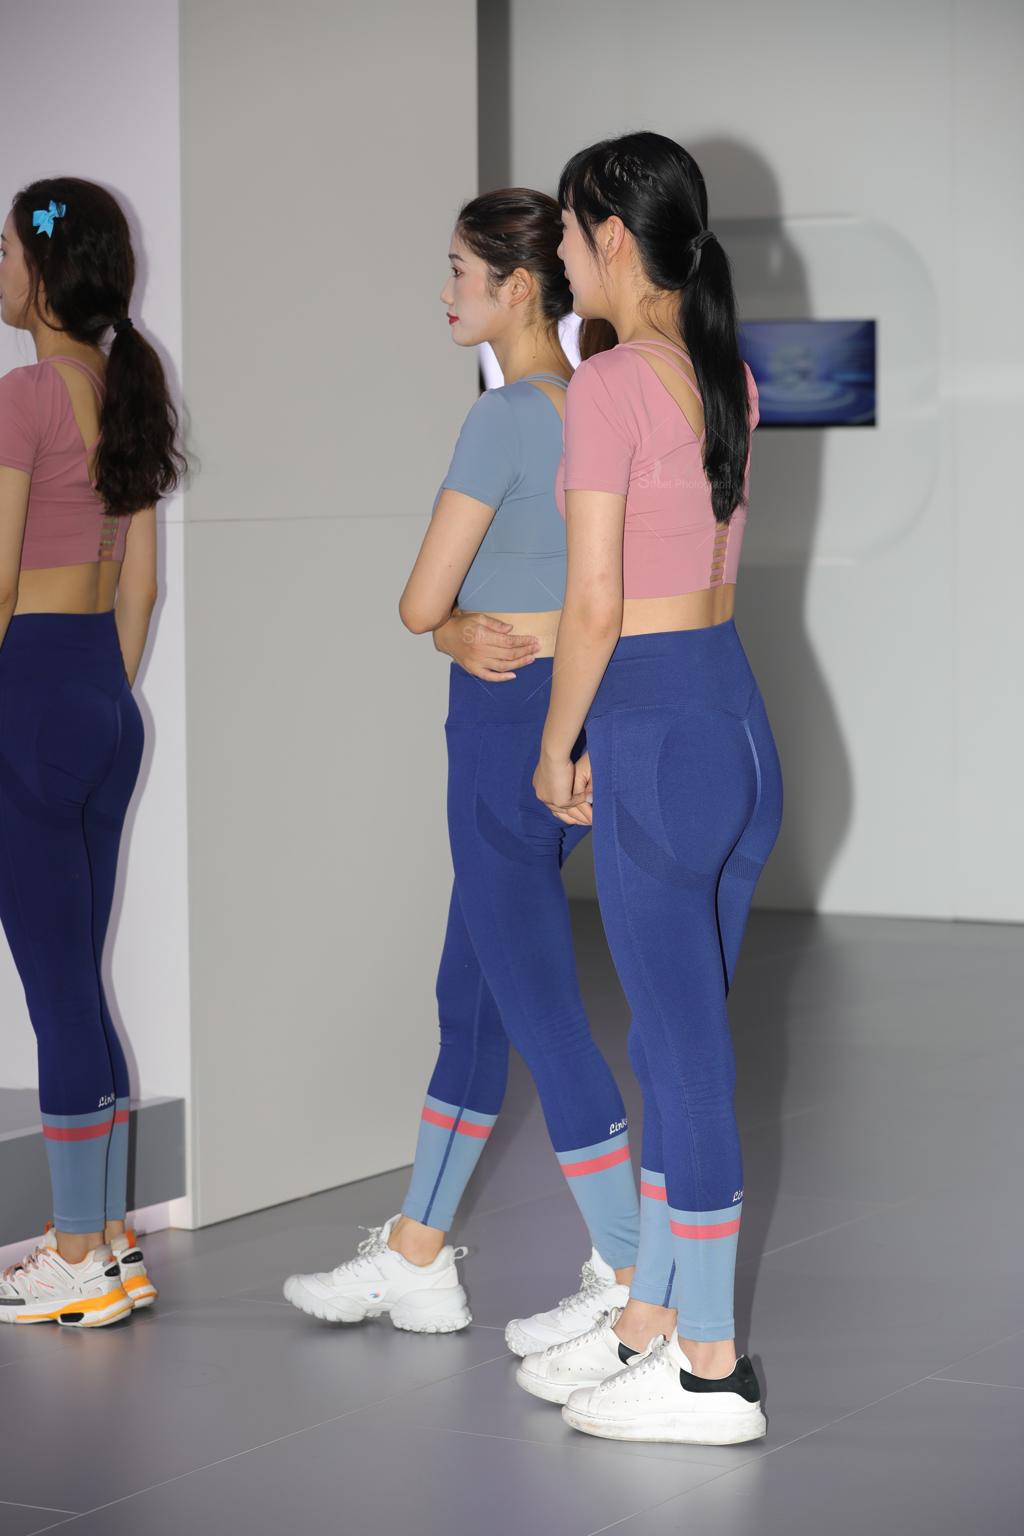 [街拍美女]202206瑜伽裤显身材凹凸有致